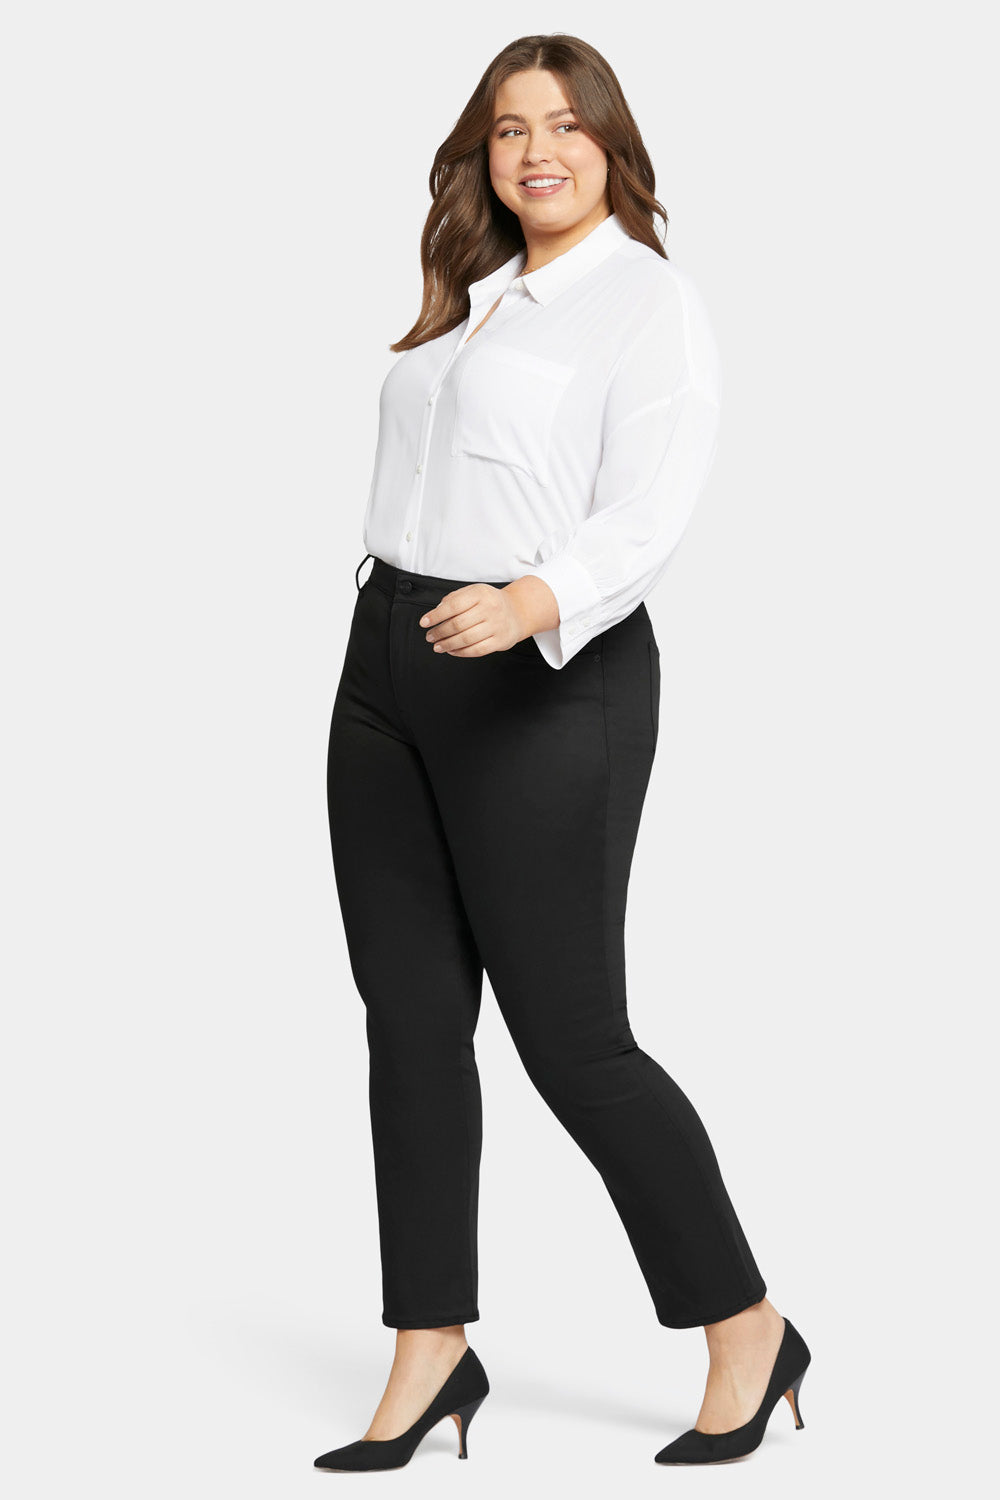 NYDJ Sheri Slim Jeans In Plus Size In BlackLast™ Denim - Black Rinse